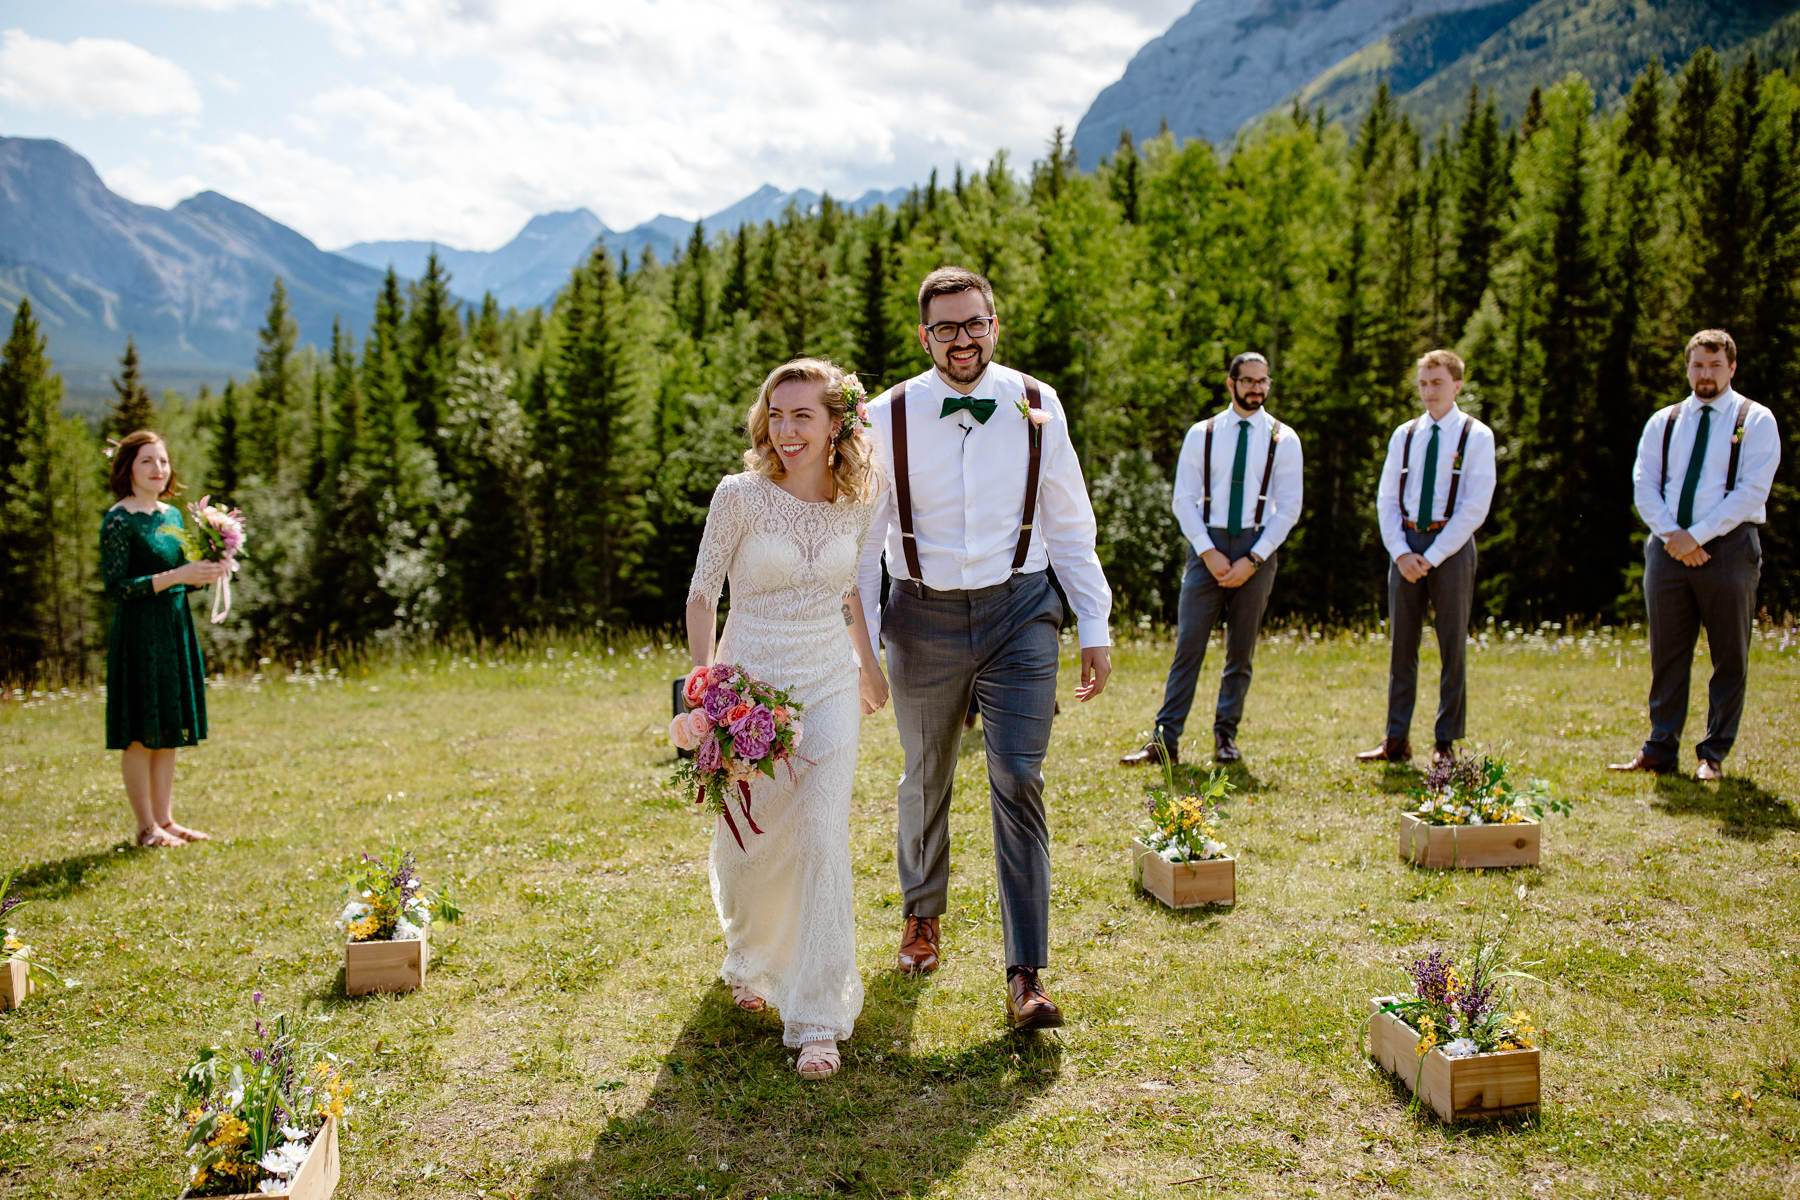 Kananaskis Wedding Photography at Pomeroy Mountain Lodge - Image  34